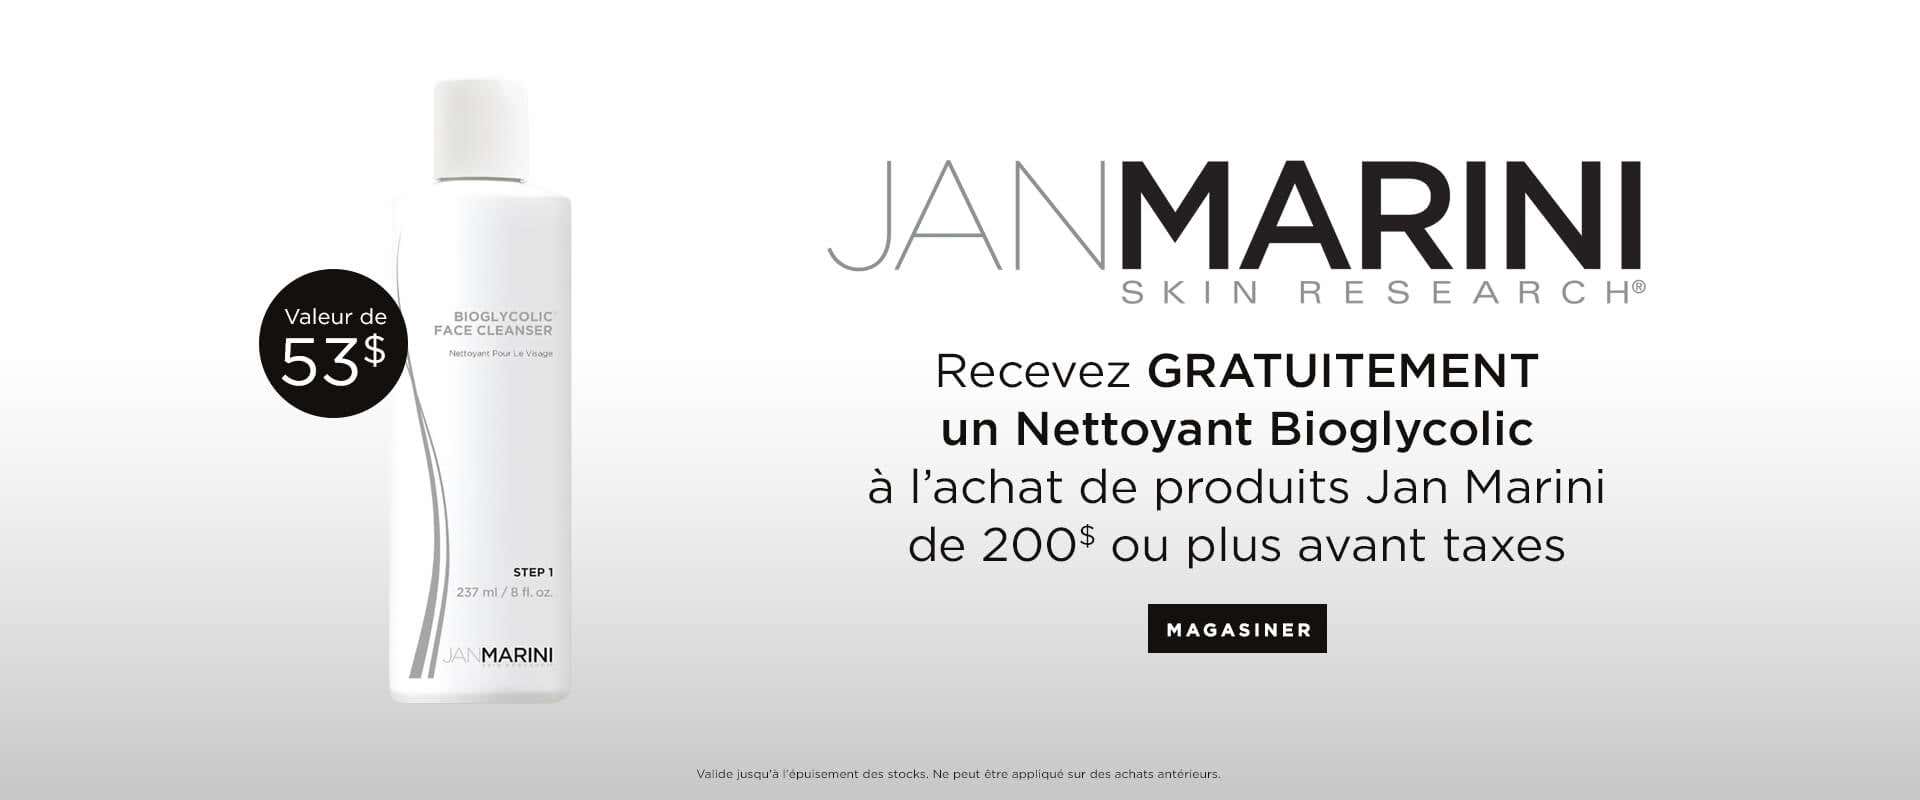 Recevez un Nettoyant Bioglycolic GRATUITEMENT avec achat de 100$ ou plus de produits Jan Marini.